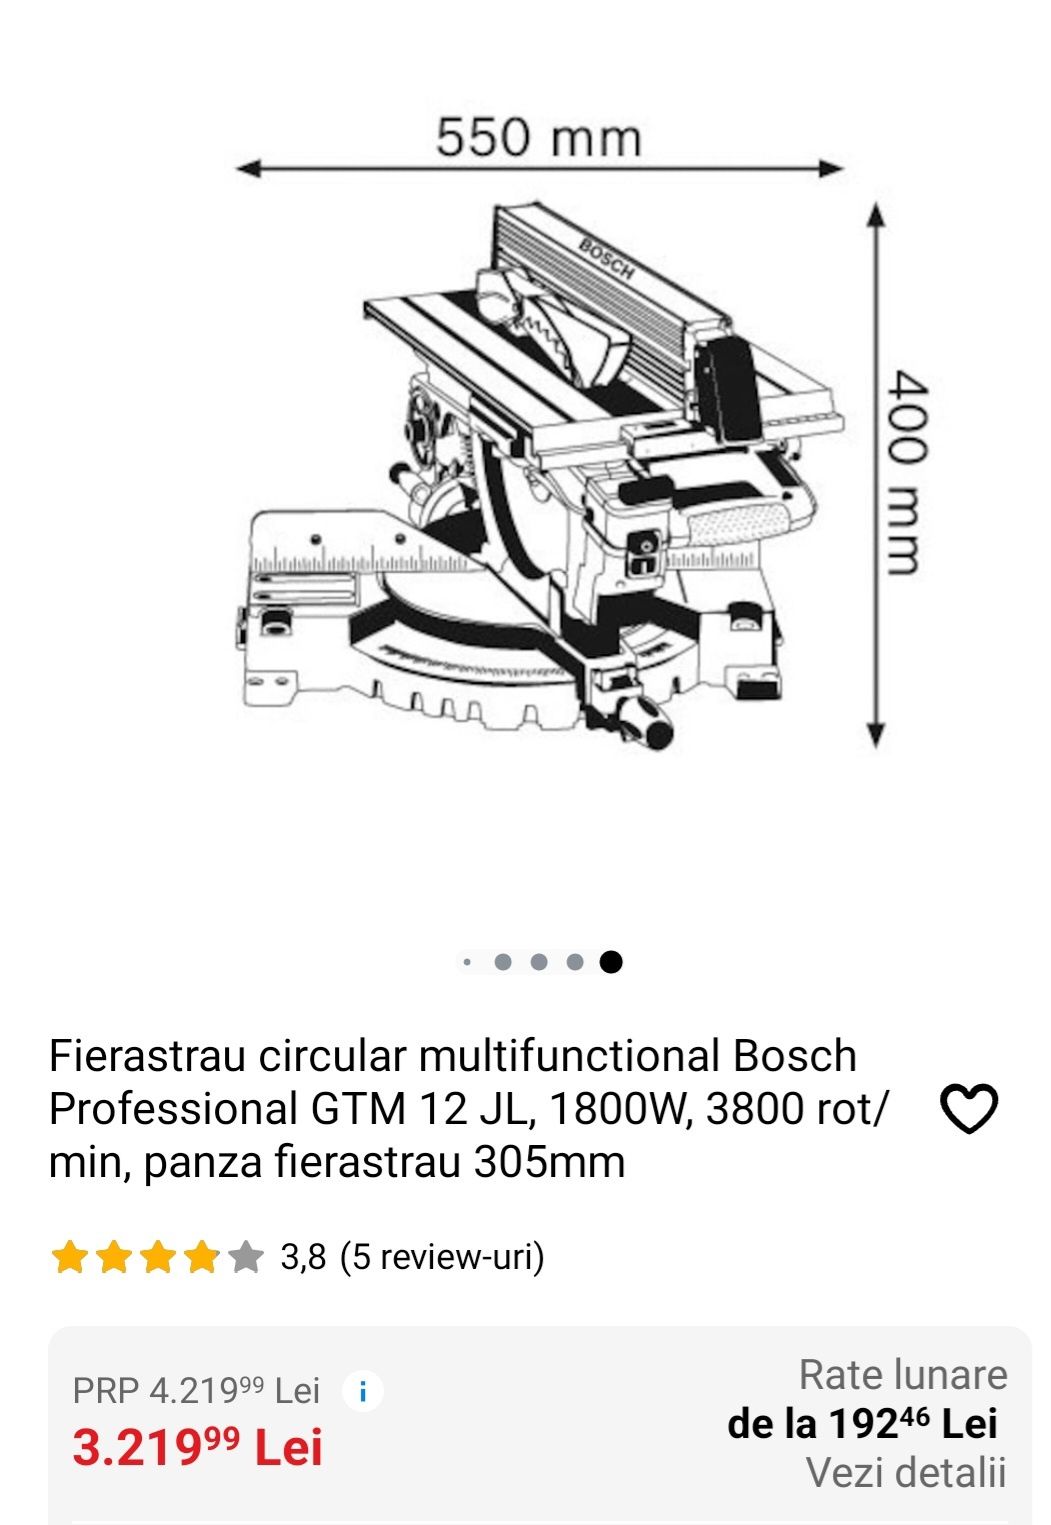 Fierastrau circular multifunctional bosch